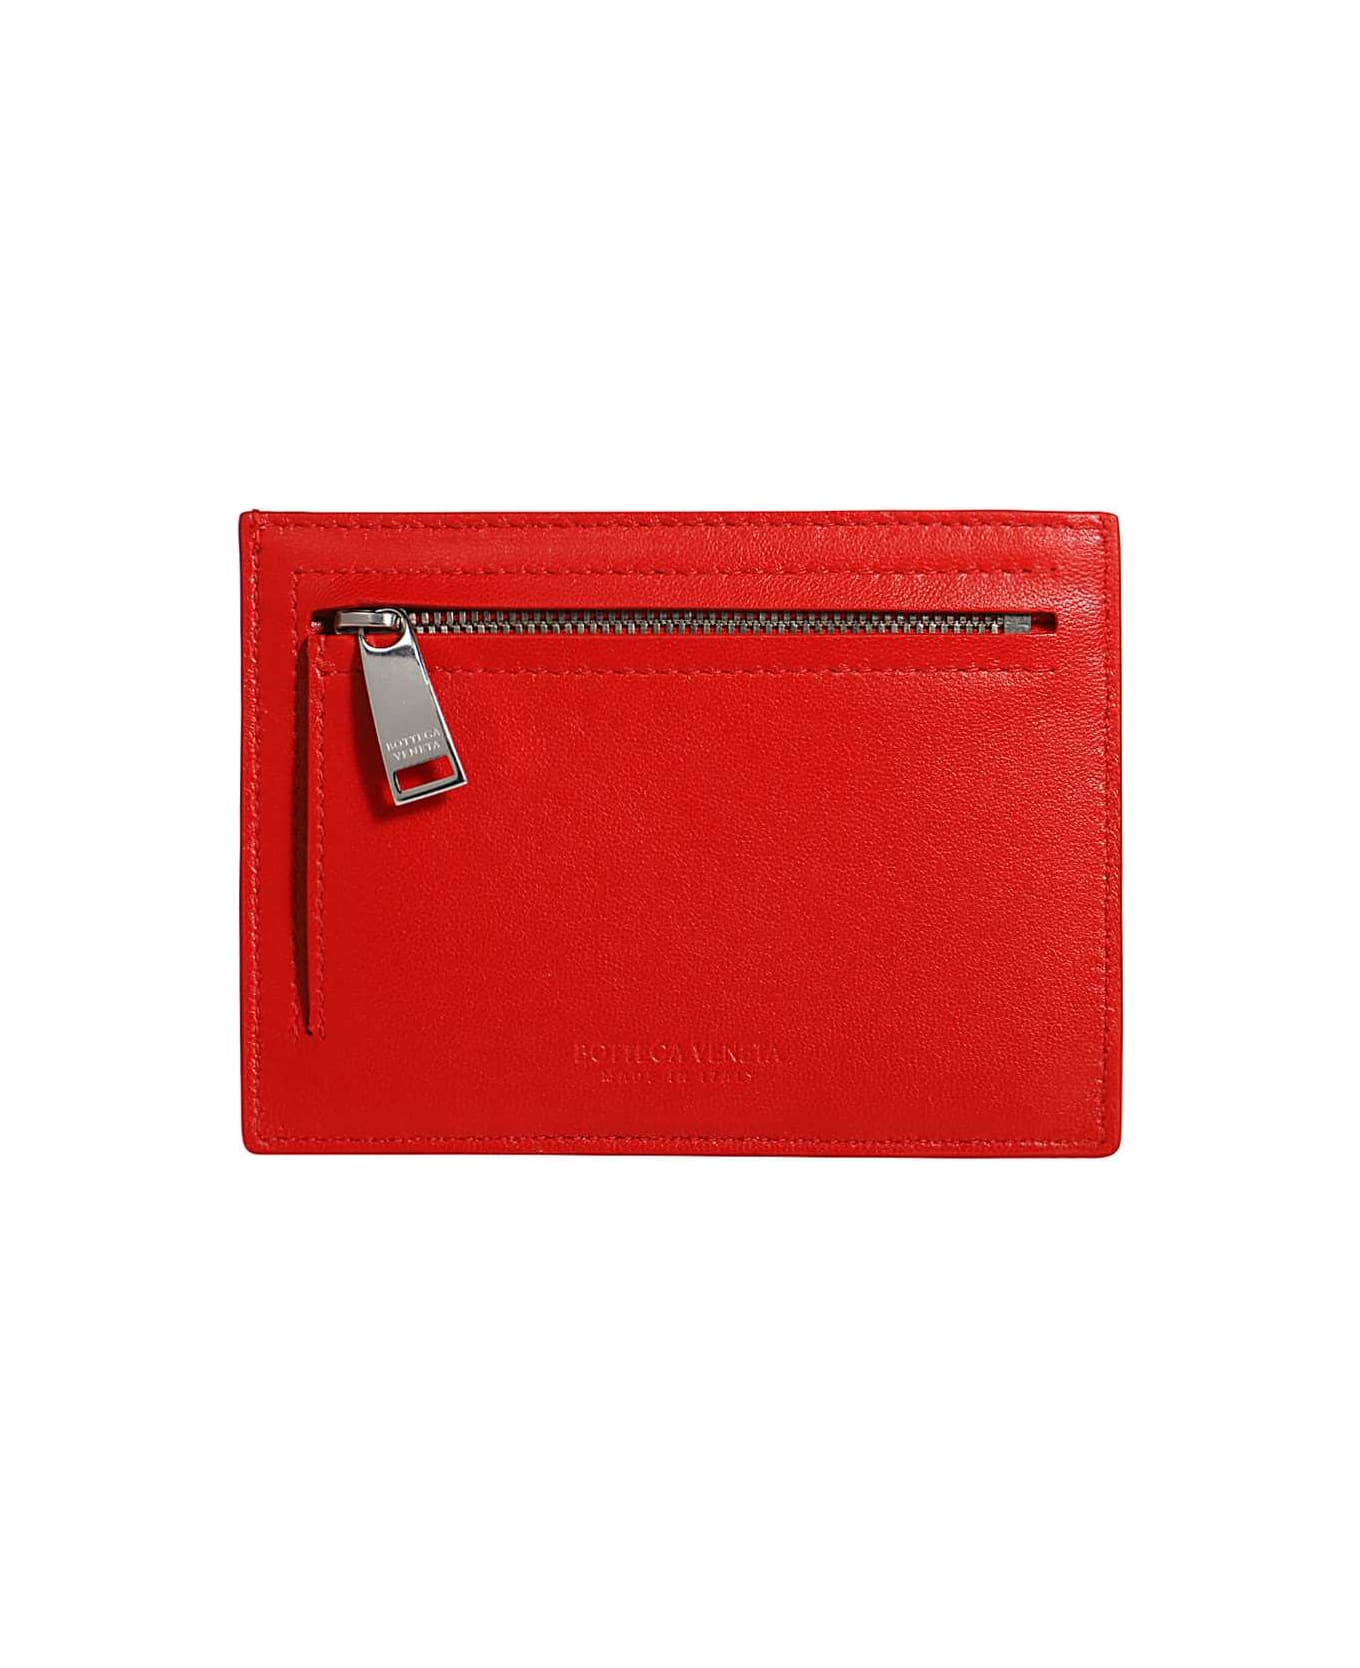 Bottega Veneta Leather Card Holder - red